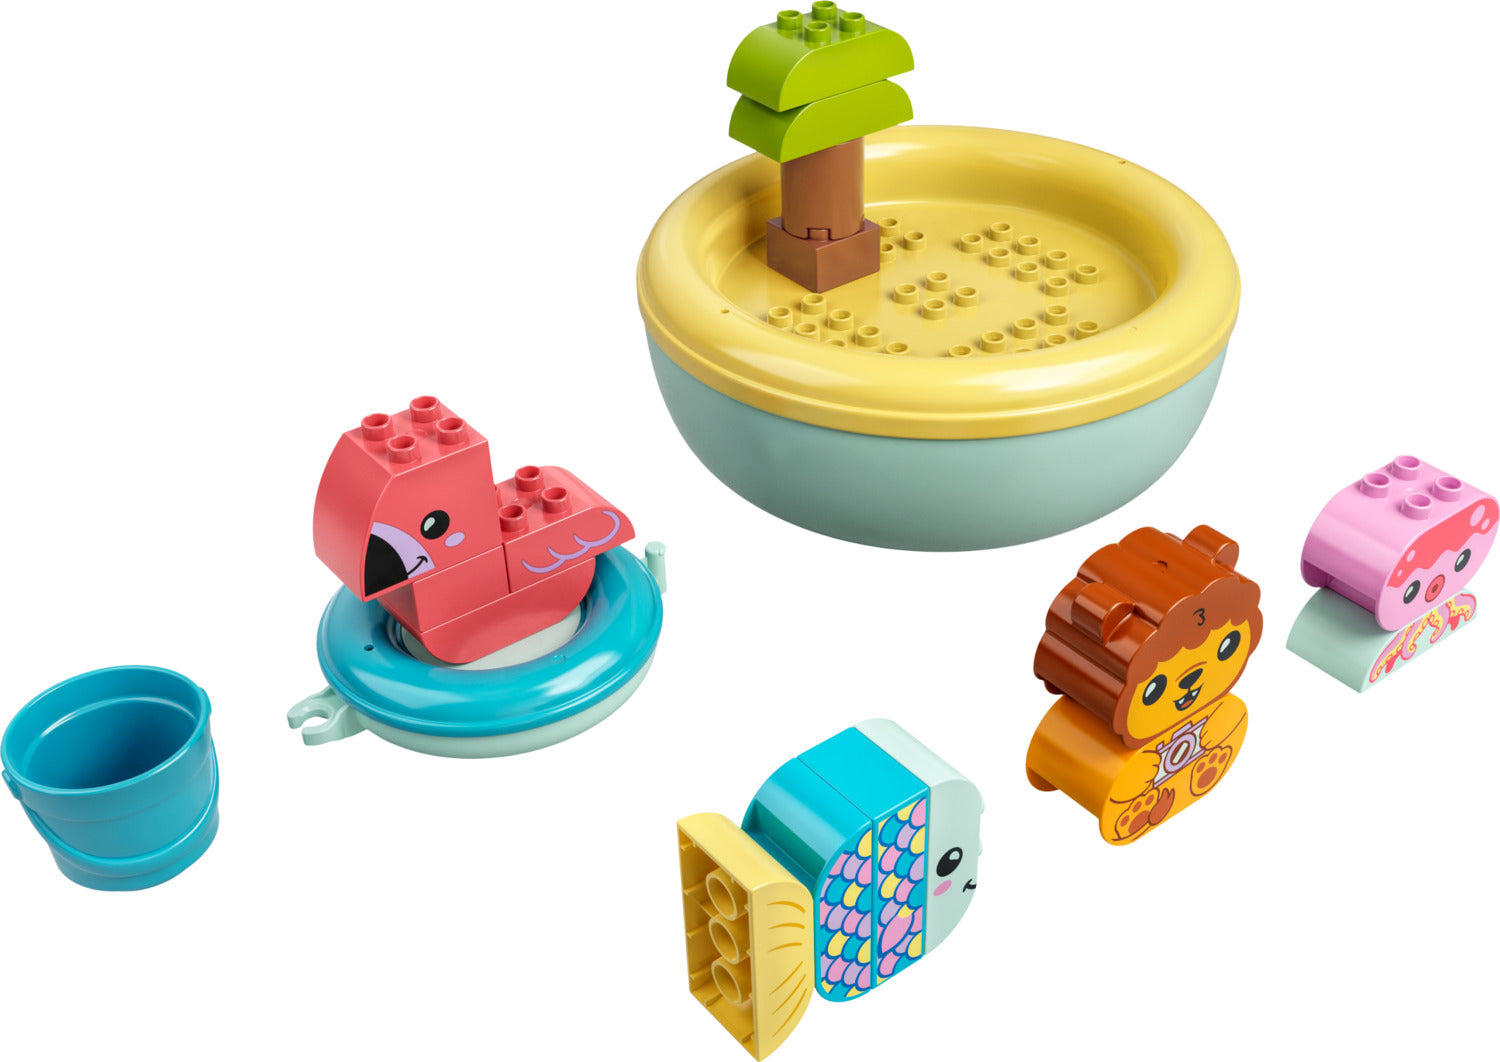 LEGO DUPLO: Bath Time Fun: Floating Animal Island